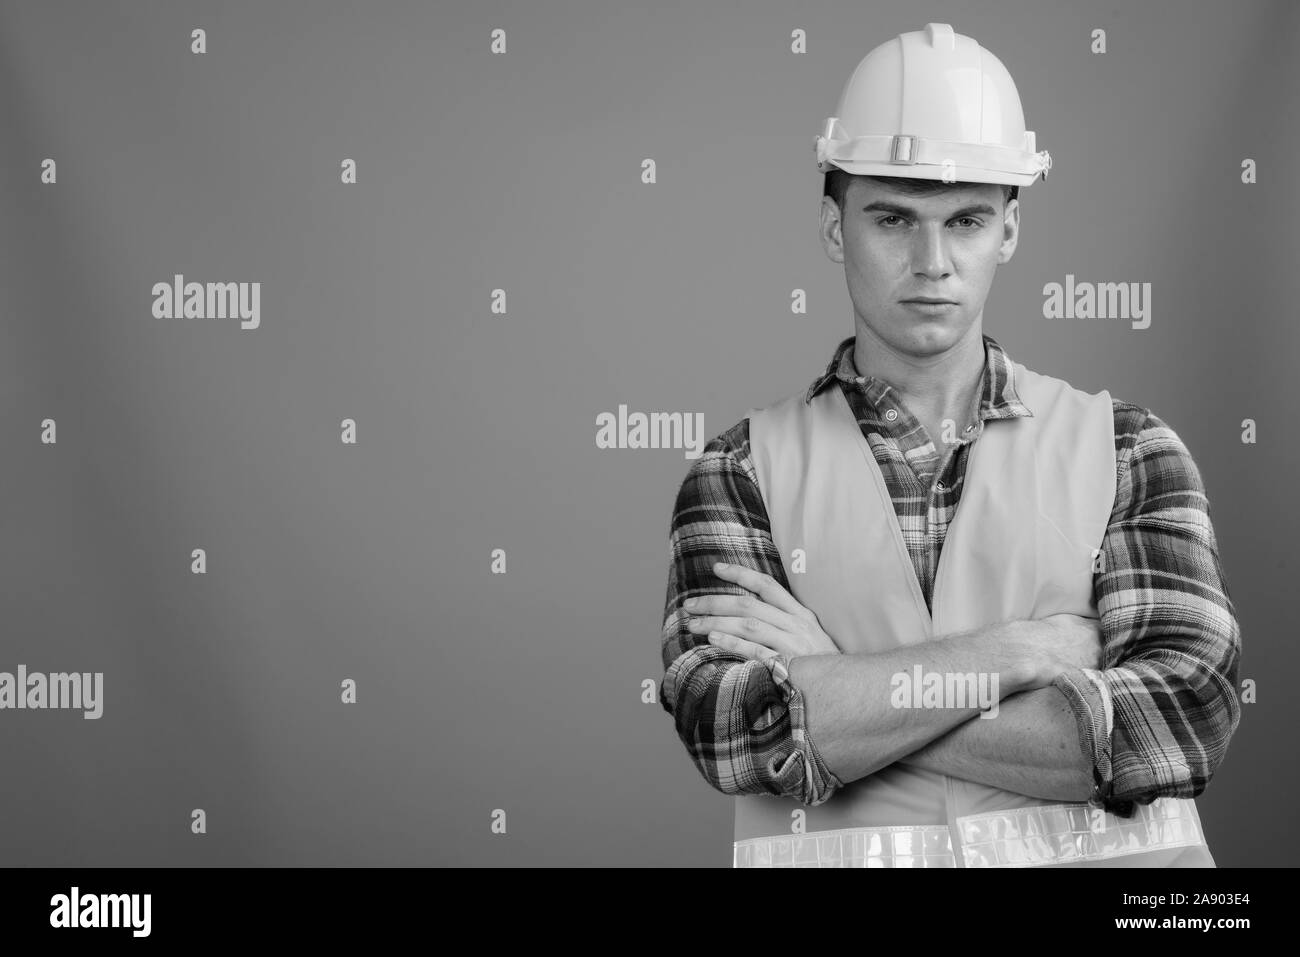 Portrait of young handsome man construction worker en noir et blanc Banque D'Images